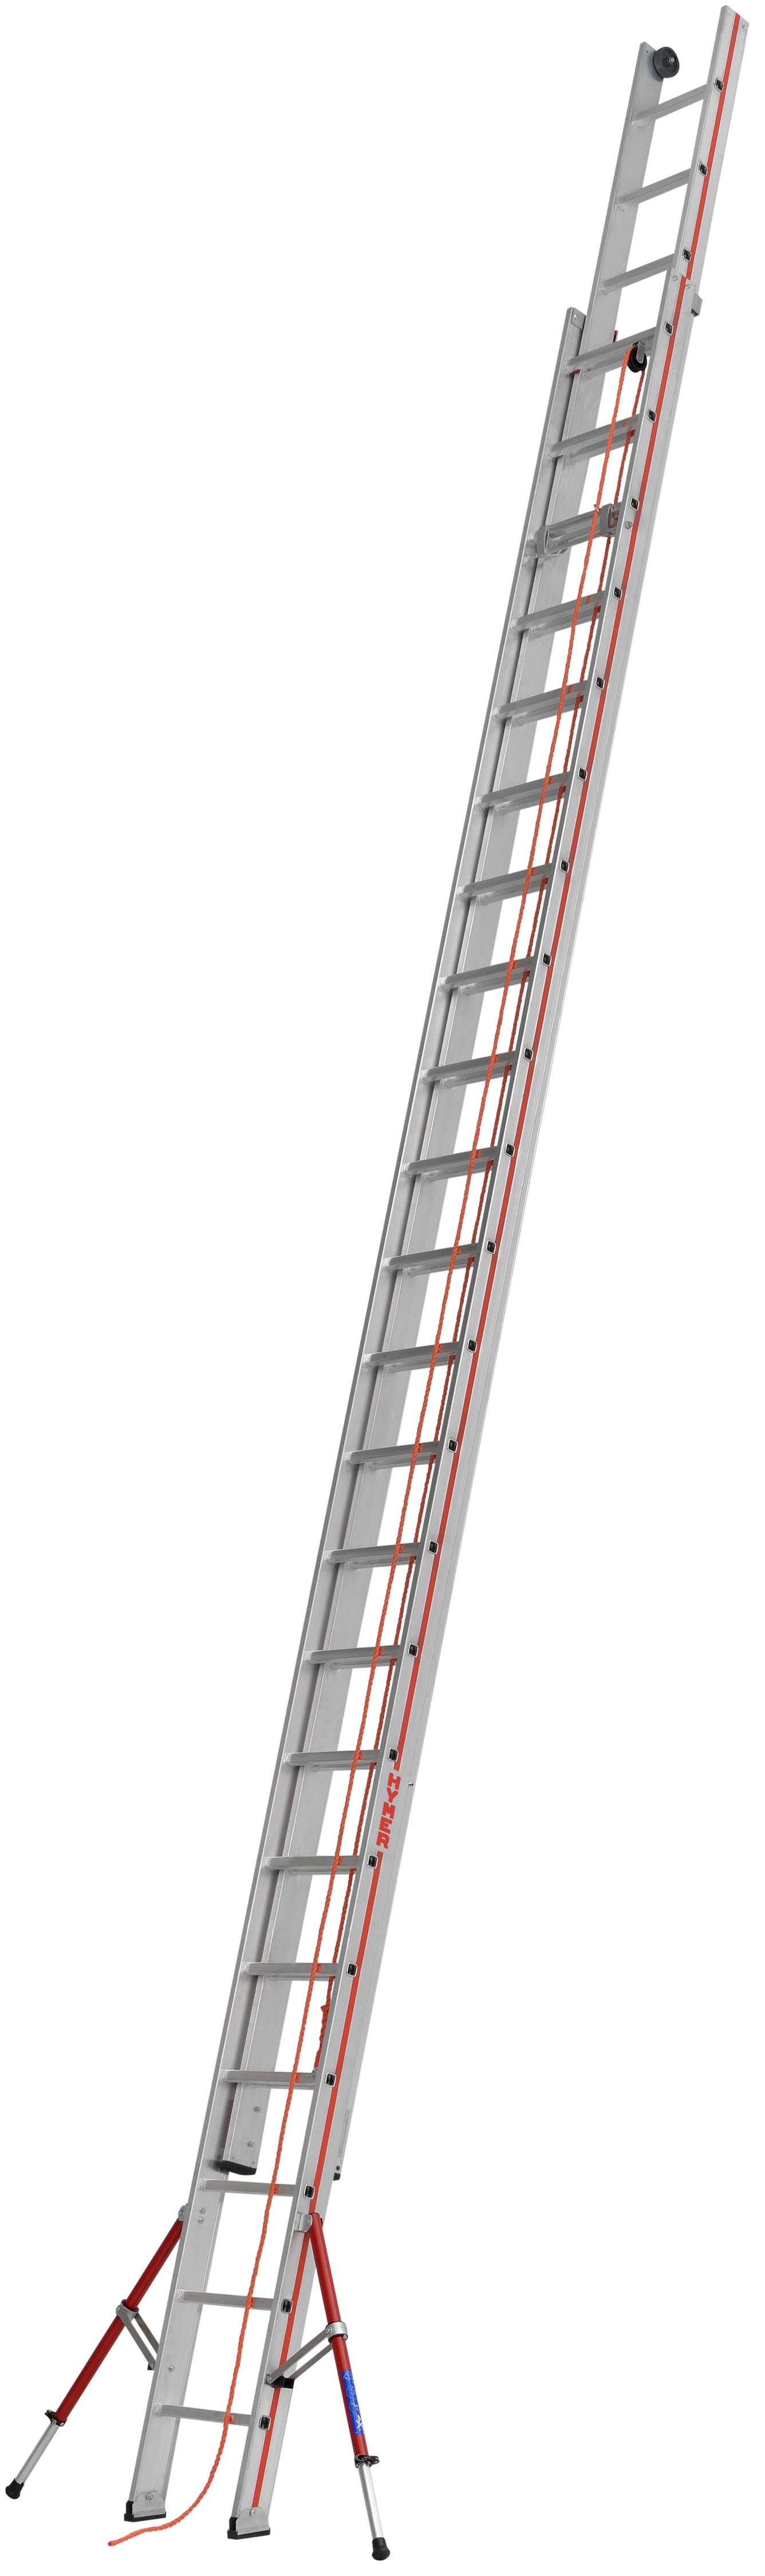 Hymer Seilzugleiter 2-teilig SC 60 Alu 2x22 Sprossen Leiter mit ausklappbaren Auslegern - Profiprogramm (HY-605144) Bild-01